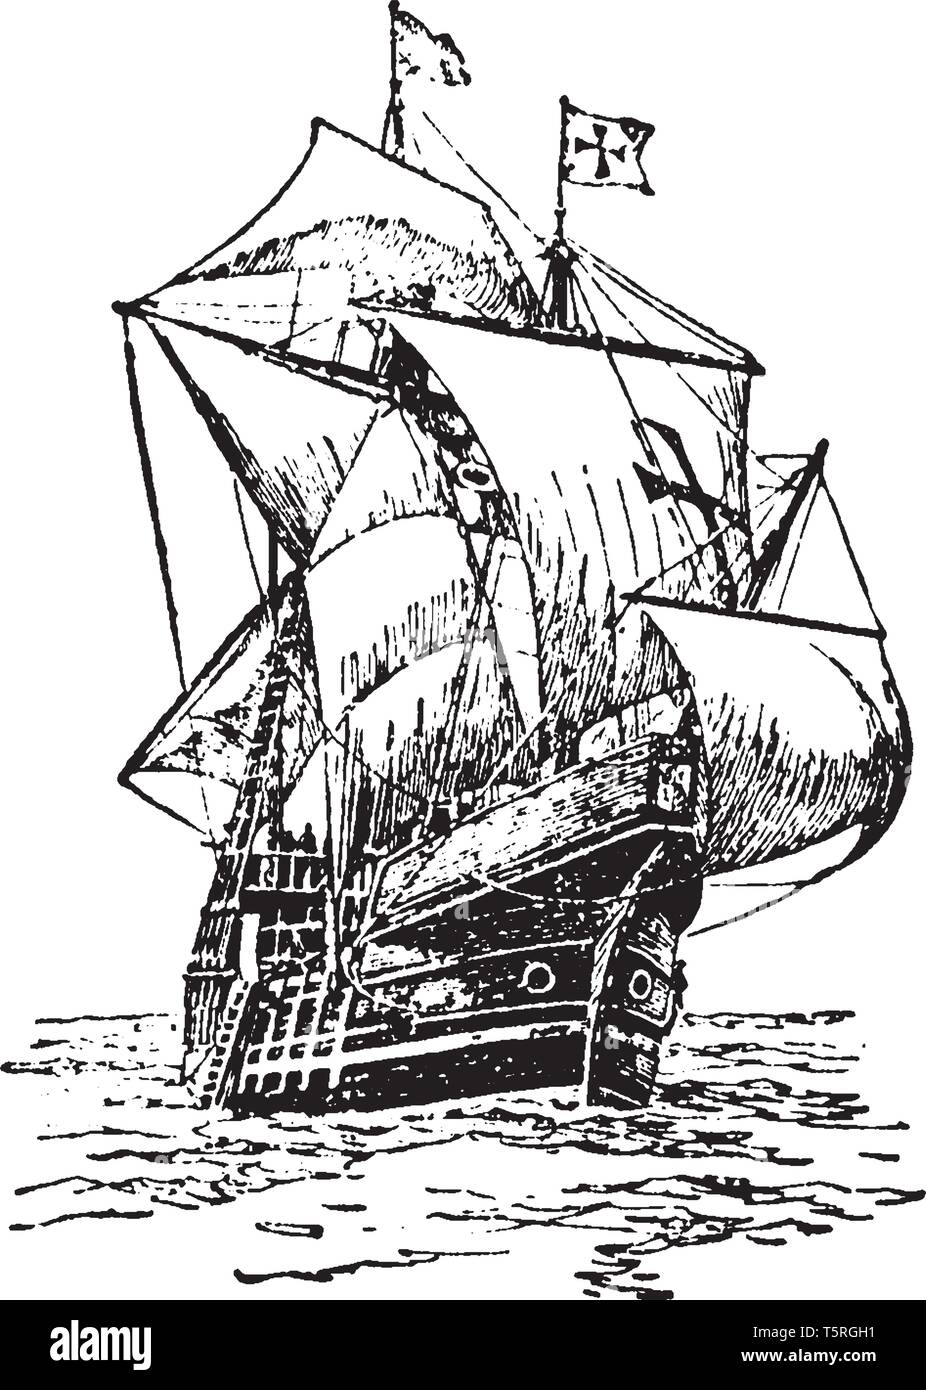 Santa Maria a été le plus grand des trois navires utilisés par Christophe Colomb lors de son premier voyage, vintage dessin ou gravure illustration. Illustration de Vecteur